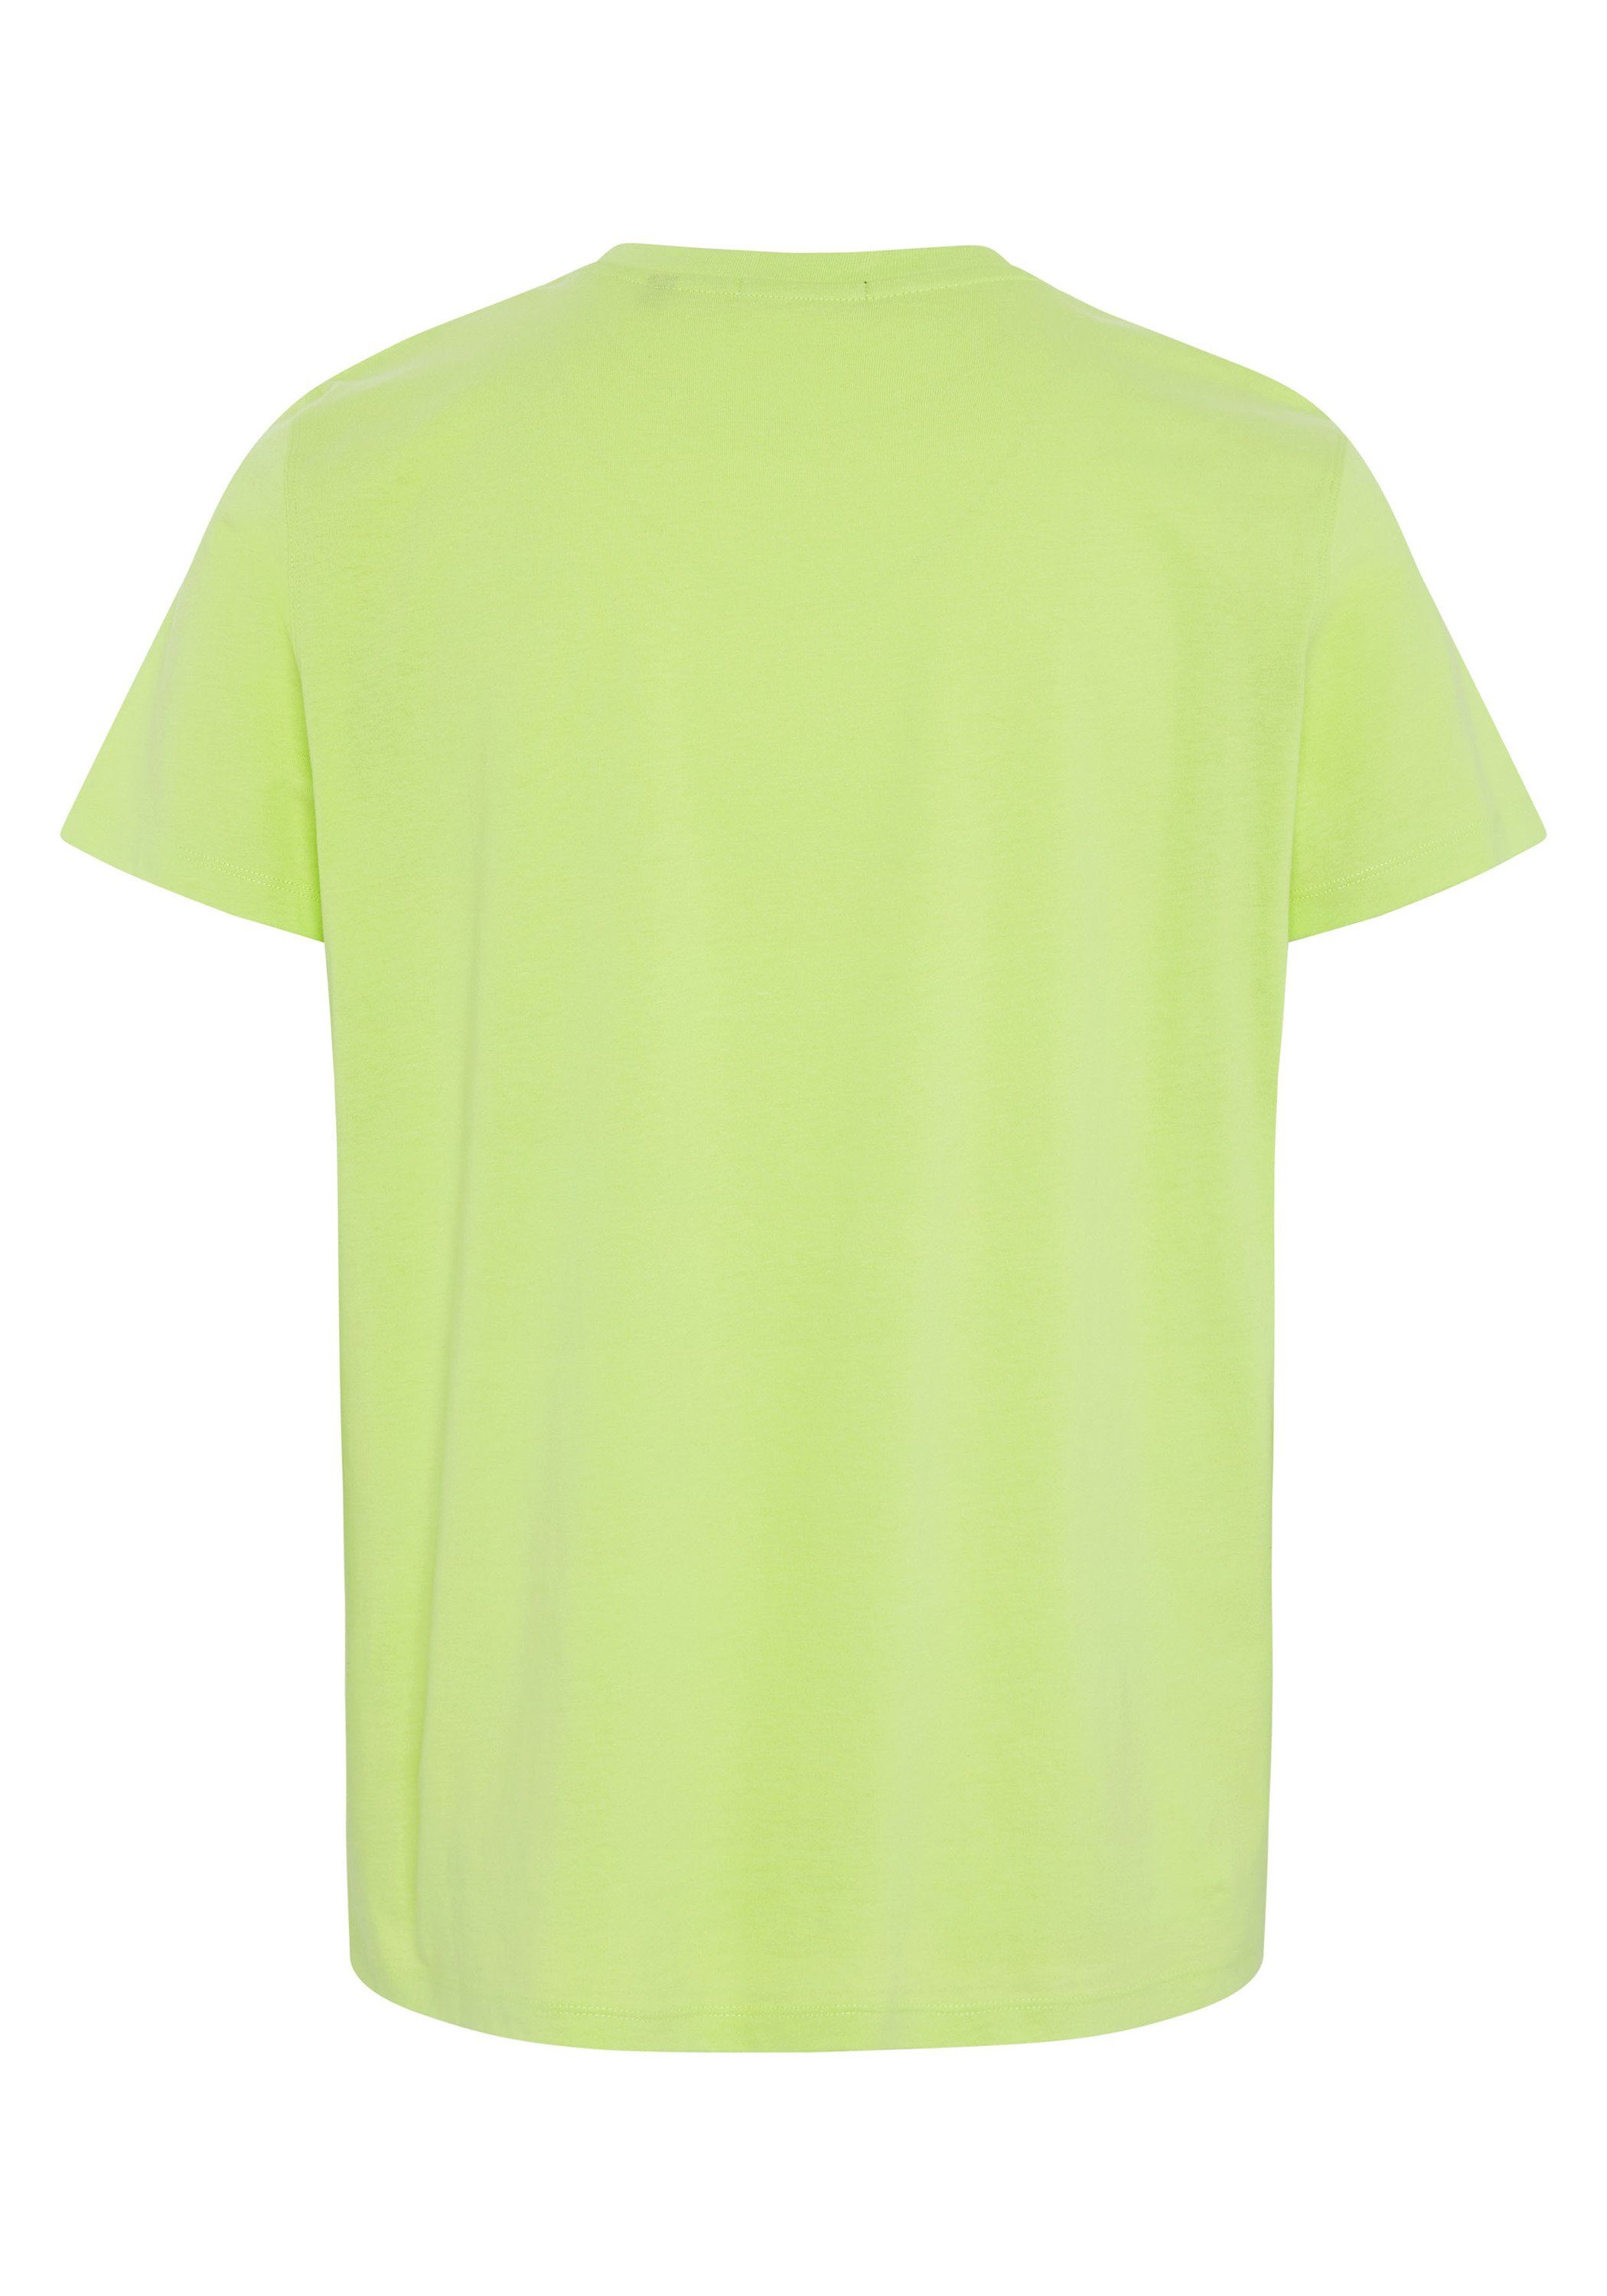 Chiemsee Print-Shirt T-Shirt mit plakativem Sharp 1 Green Markenschriftzug 13-0535